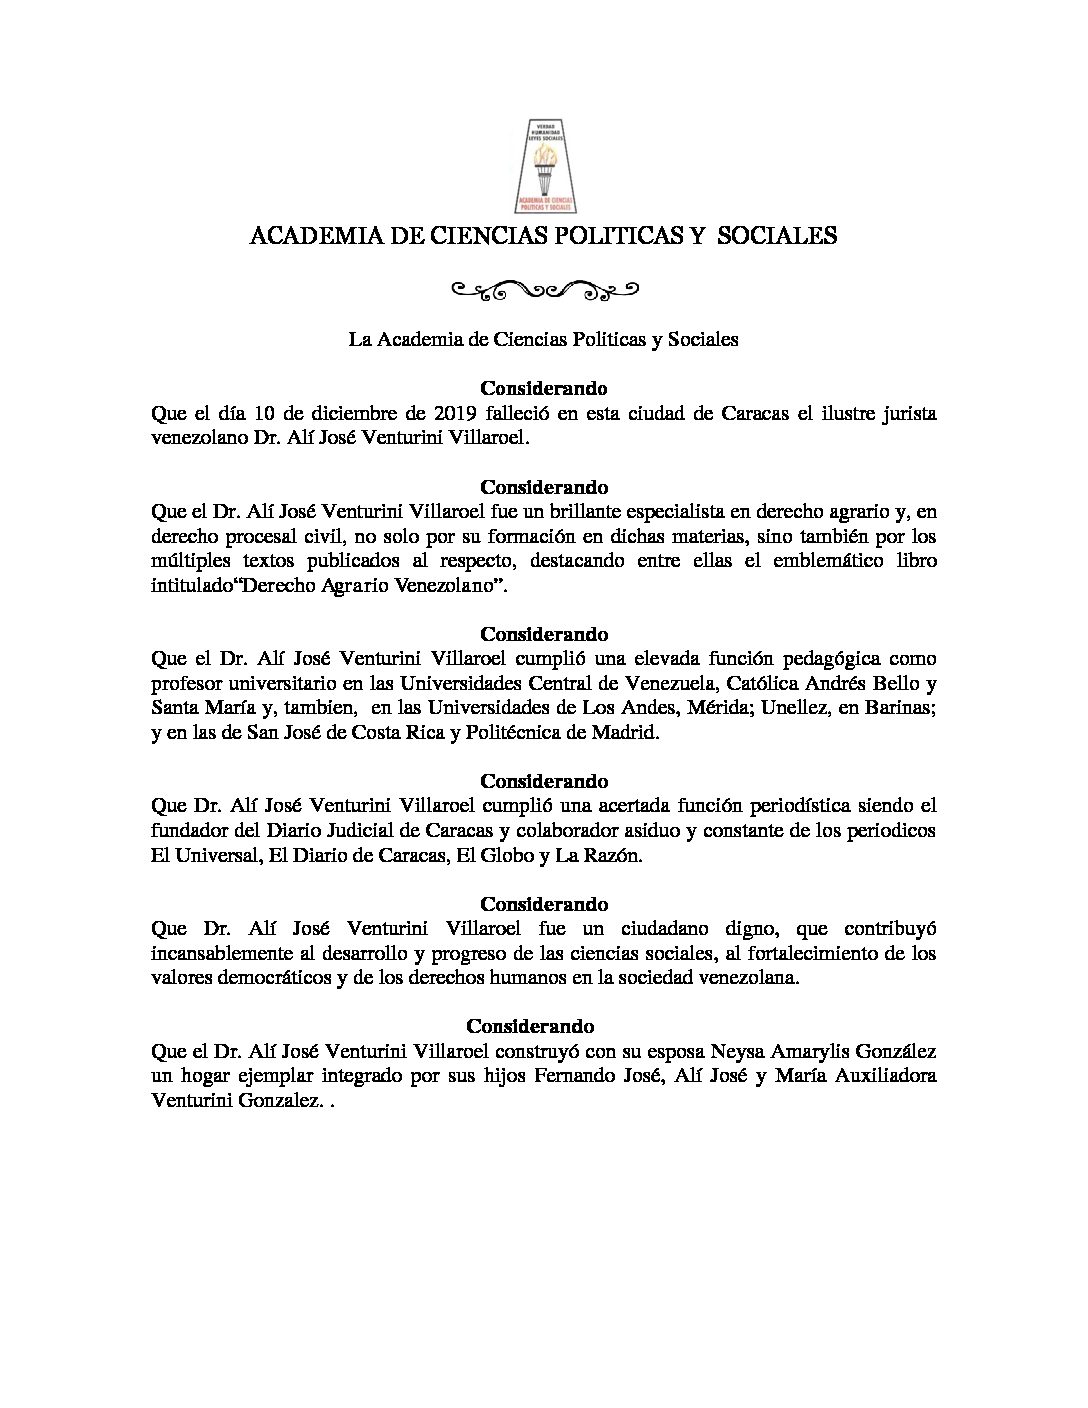 Acuerdo de duelo Dr. Alí José Venturini Villarroel